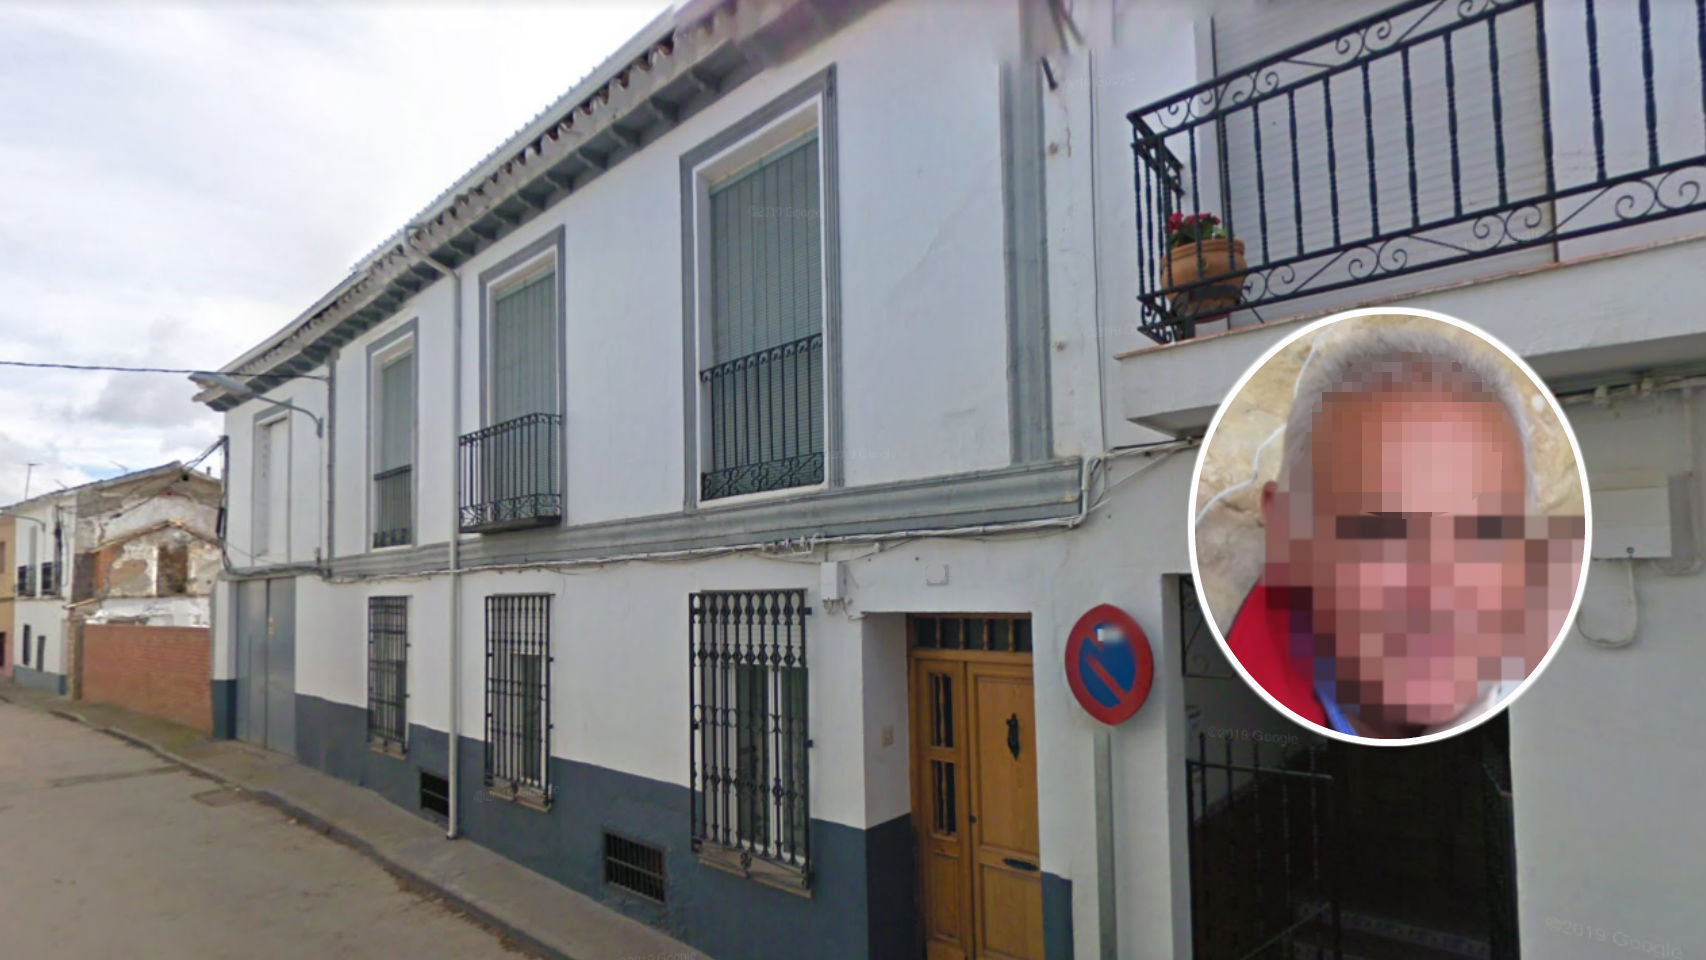 Santos, el guardia civil retirado en una imagen publicada por Antena 3, y la calle donde reside, en Villanueva de Alcardete.